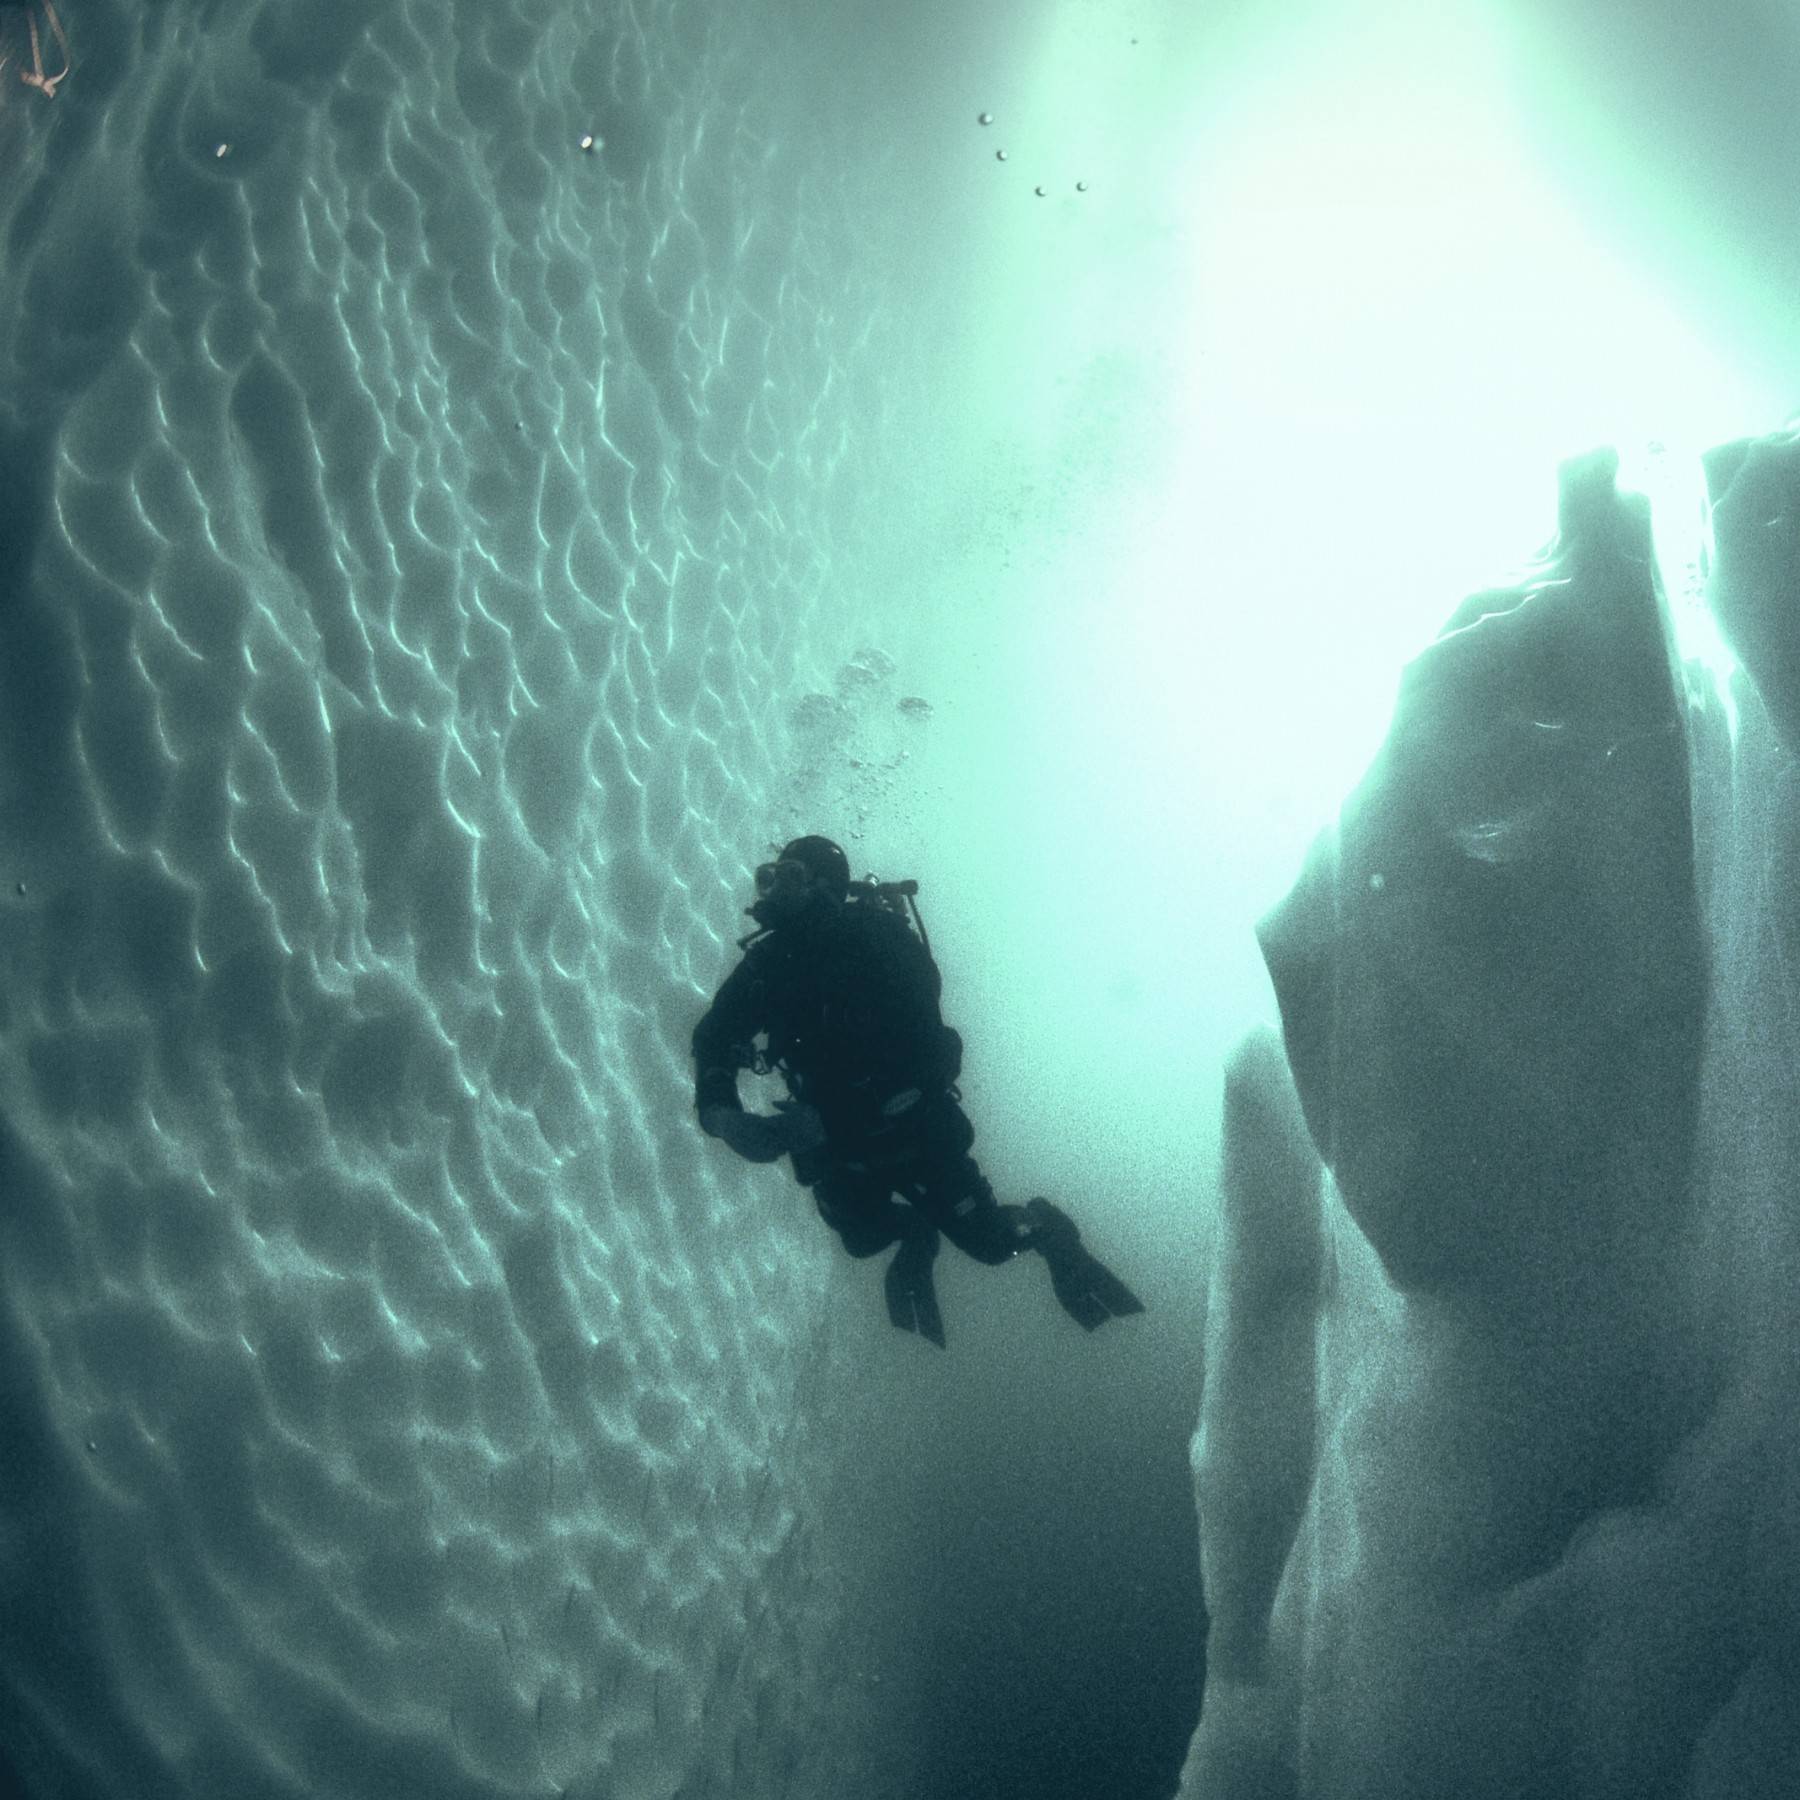 Diver between icebergs in Greenland